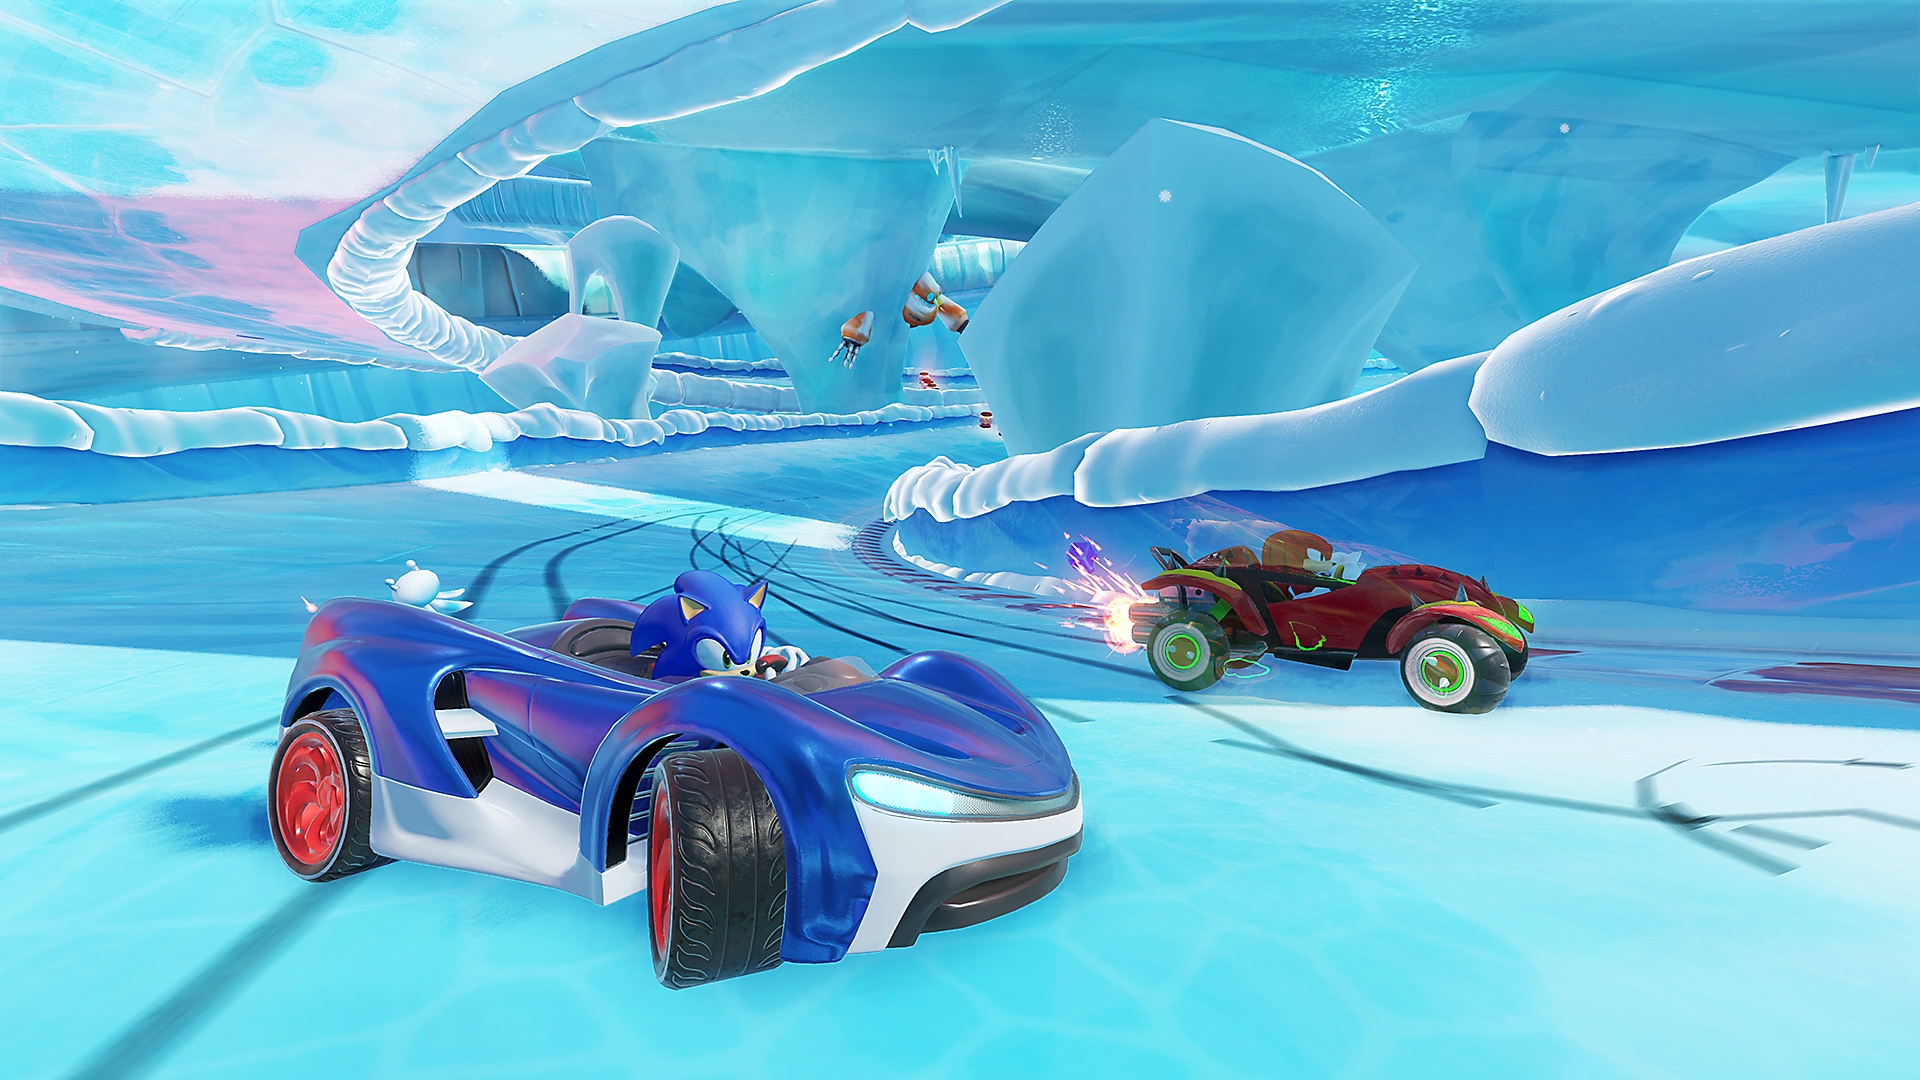 Capture d'écran de Team Sonic Racing montrant le personnage de Sonic dans une voiture de course bleue sur un circuit gelé